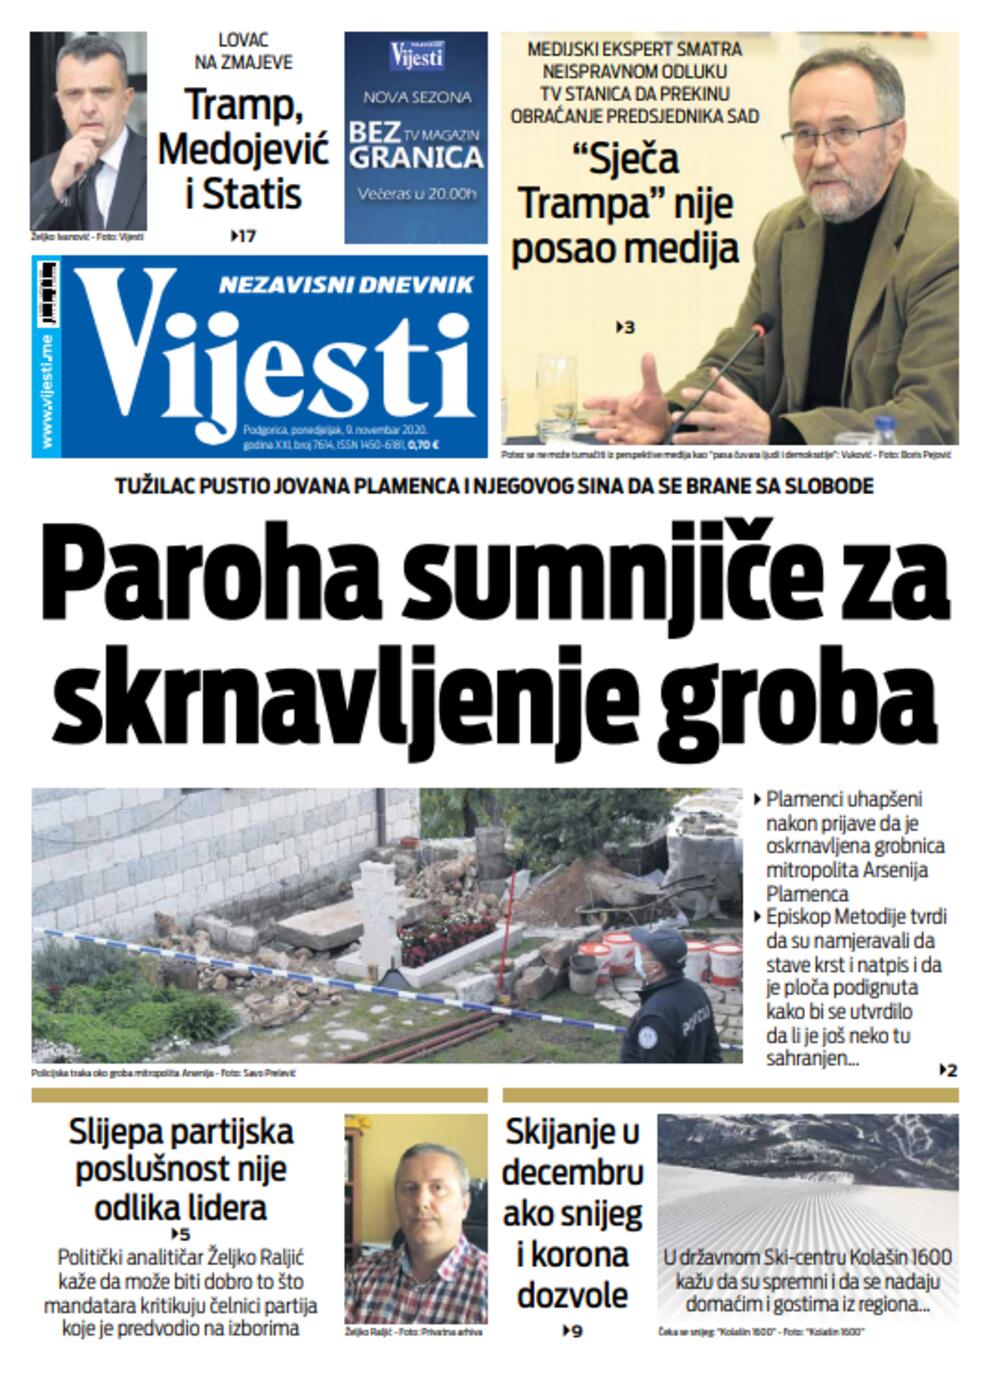 Naslovna strana "Vijesti" za deveti novembar, Foto: Vijesti